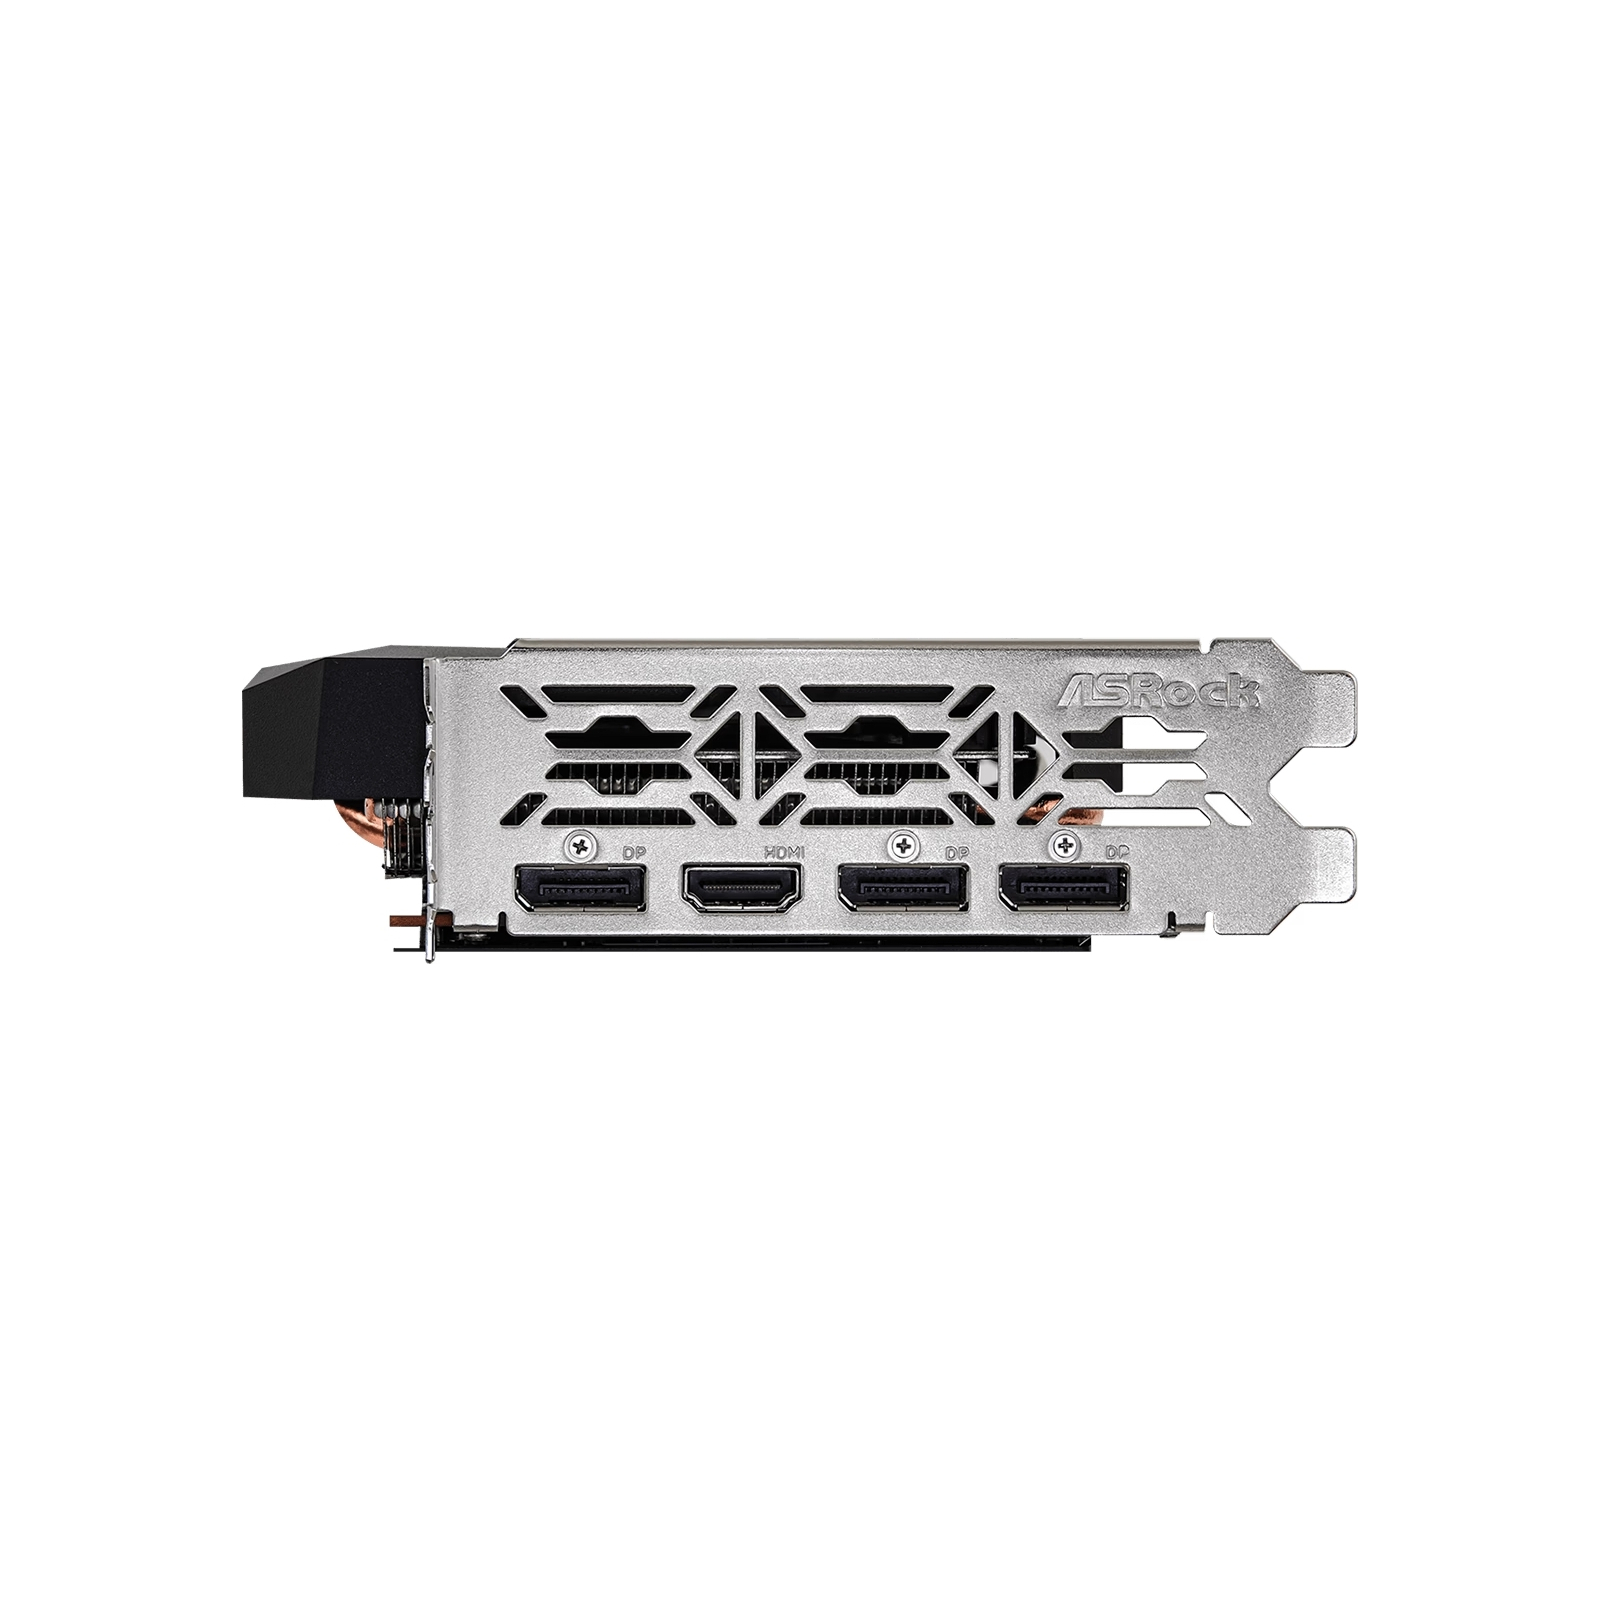 Видеокарта ASRock Radeon RX 6600 8Gb Challenger D (RX6600 CLD 8G) изображение 3